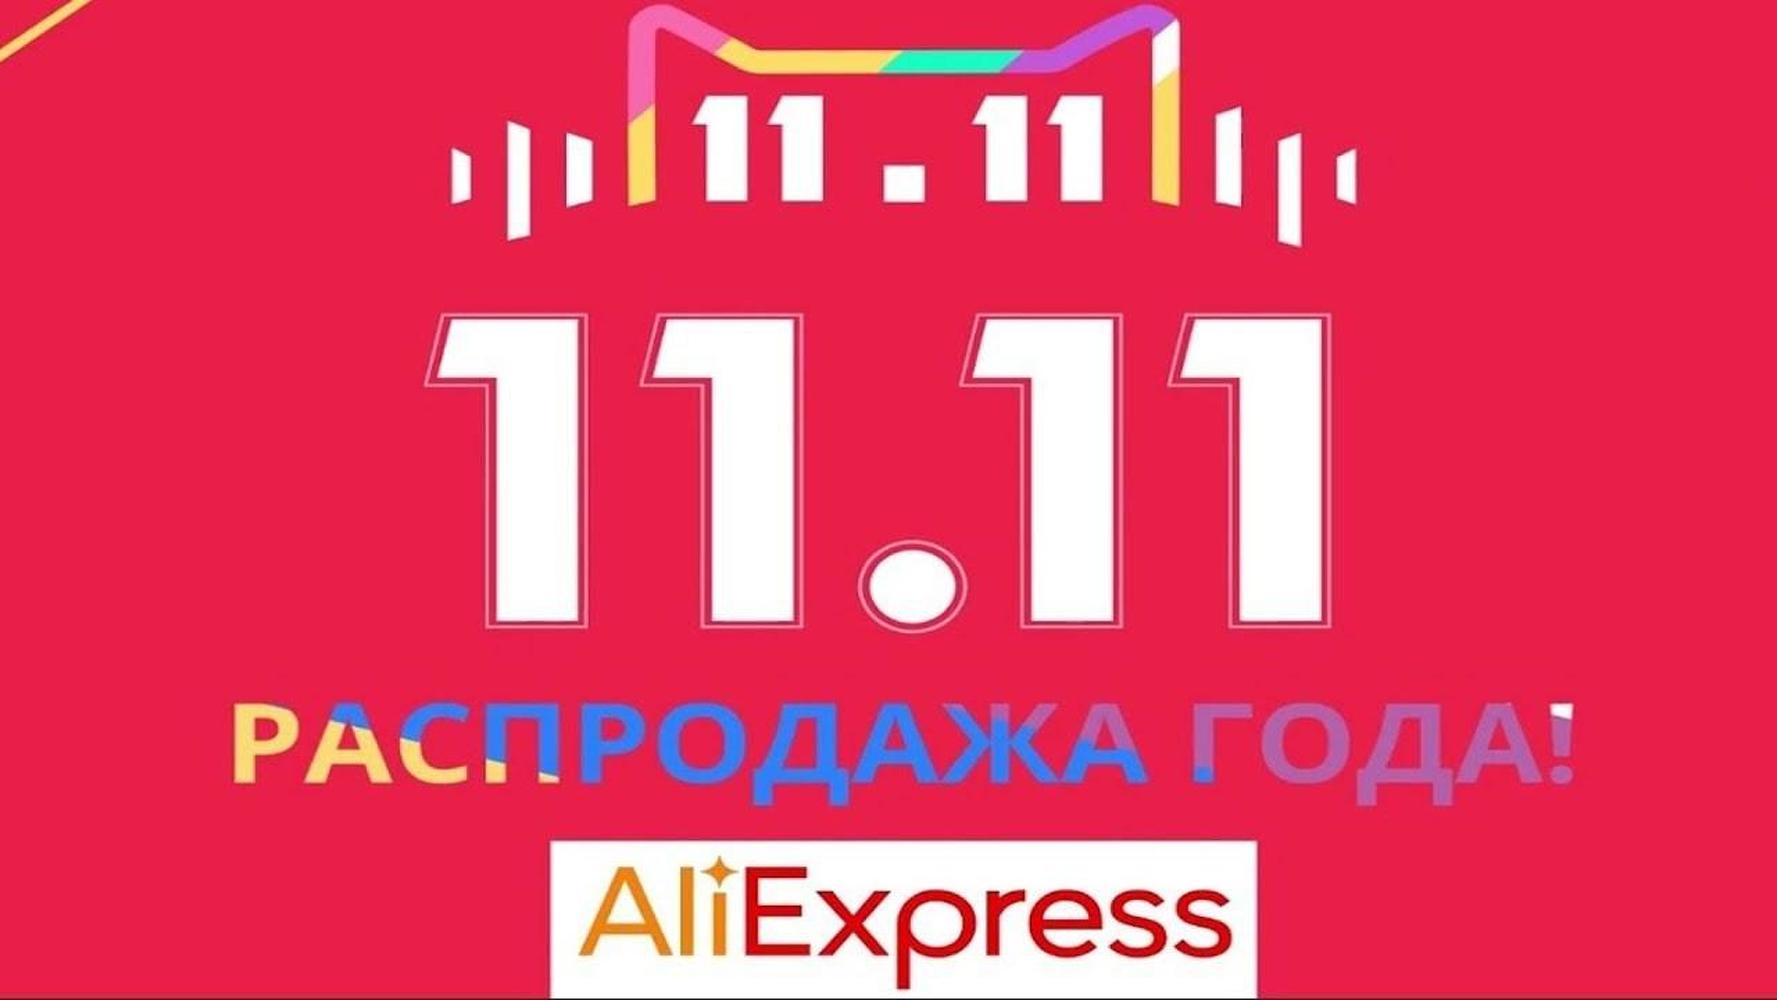 Владелец AliExpress обновил рекорд продаж 11 ноября, заработав 19 годовых бюджетов Кыргызстана — Today.kg